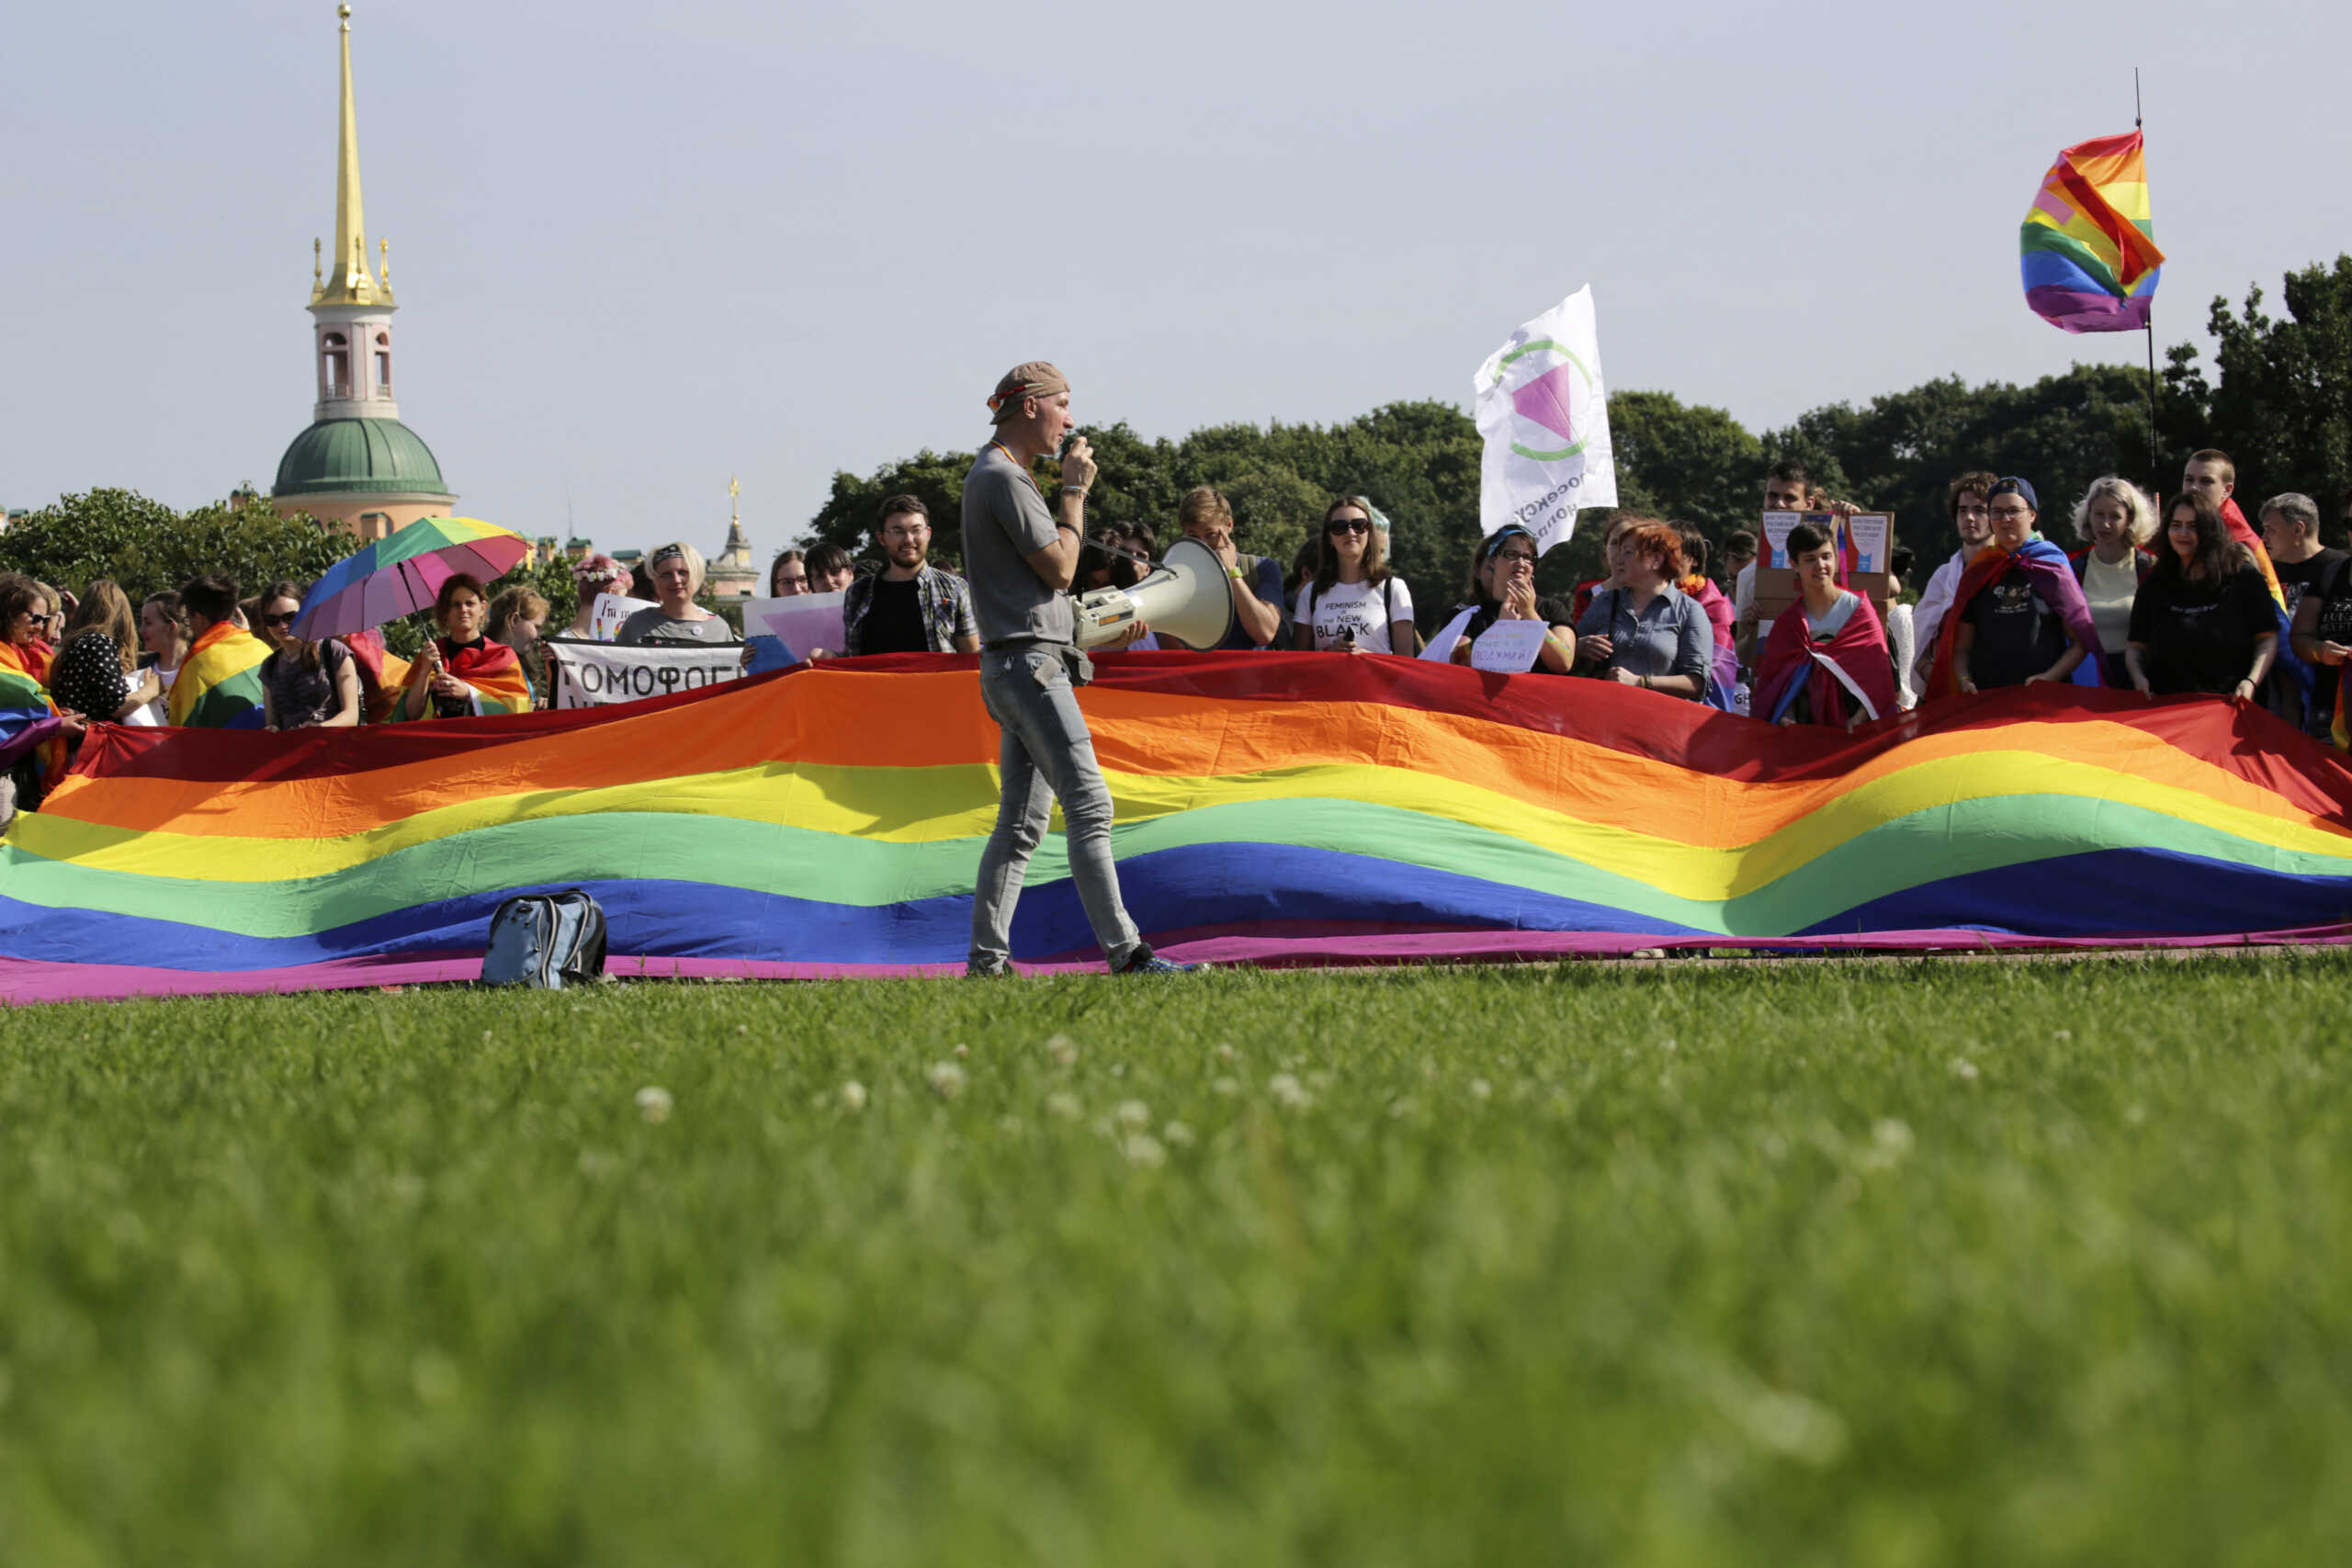 Ρωσία κατά των ΛΟΑΤΚΙ: Πέρασαν νομοσχέδιο που απαγορεύει την προπαγάνδα «μη παραδοσιακών σεξουαλικών σχέσεων»